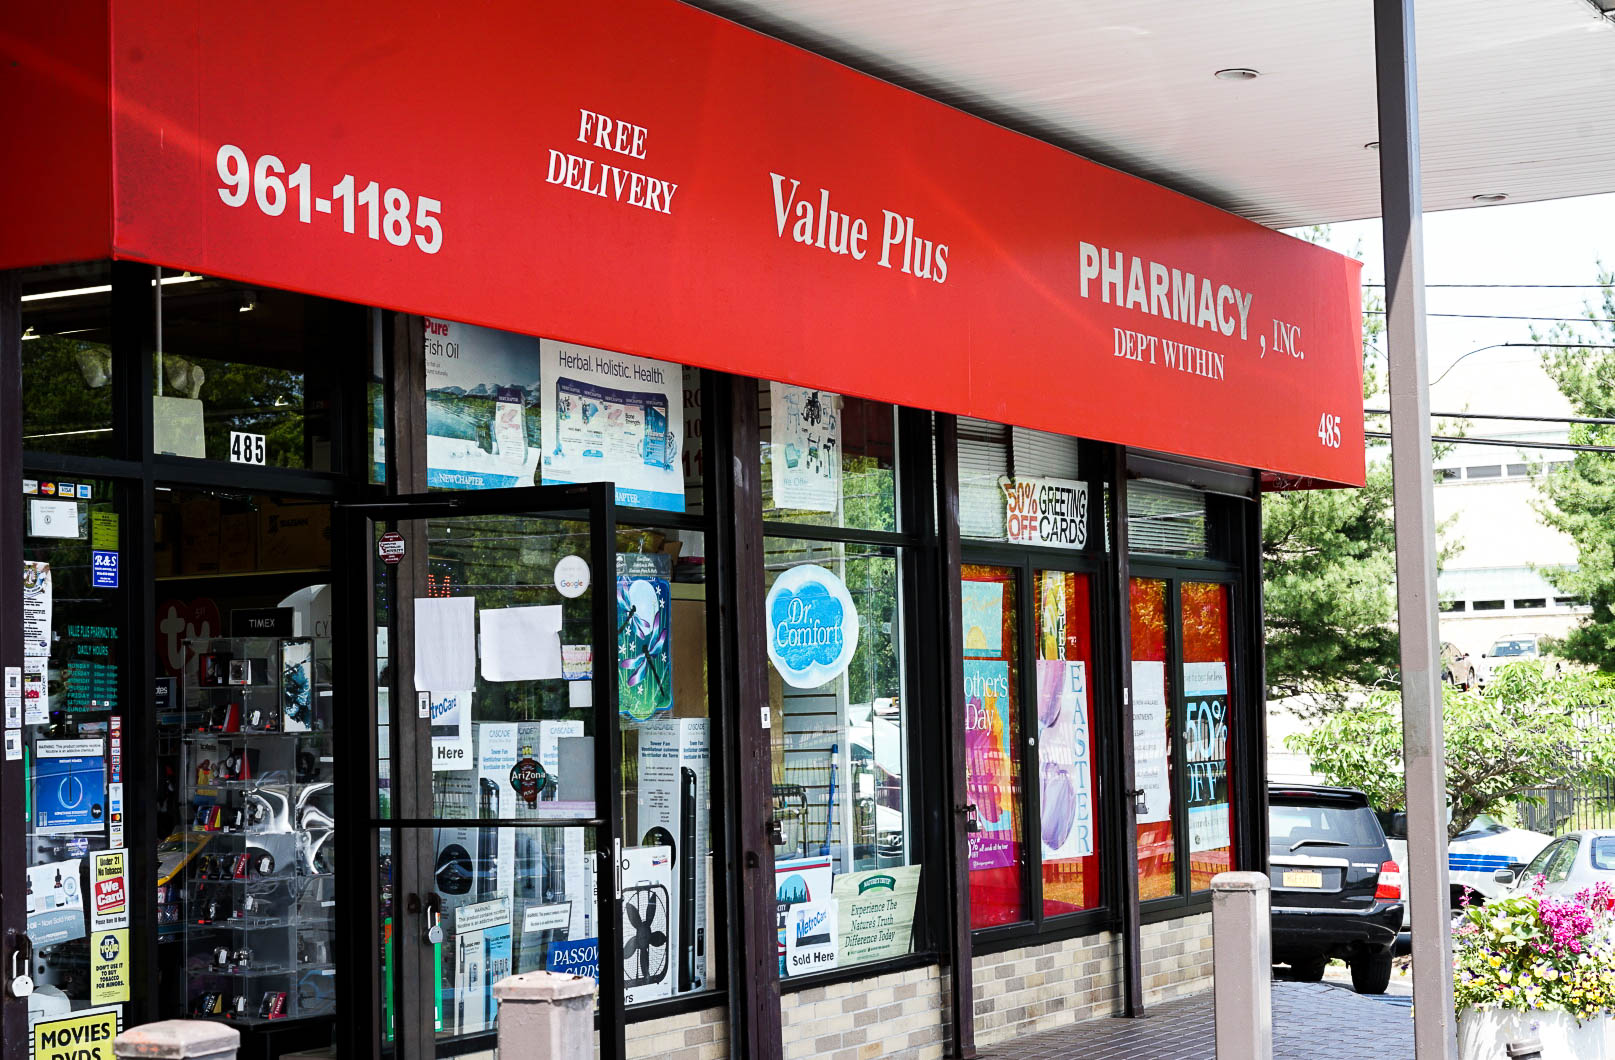 ValuePlus Pharmacy